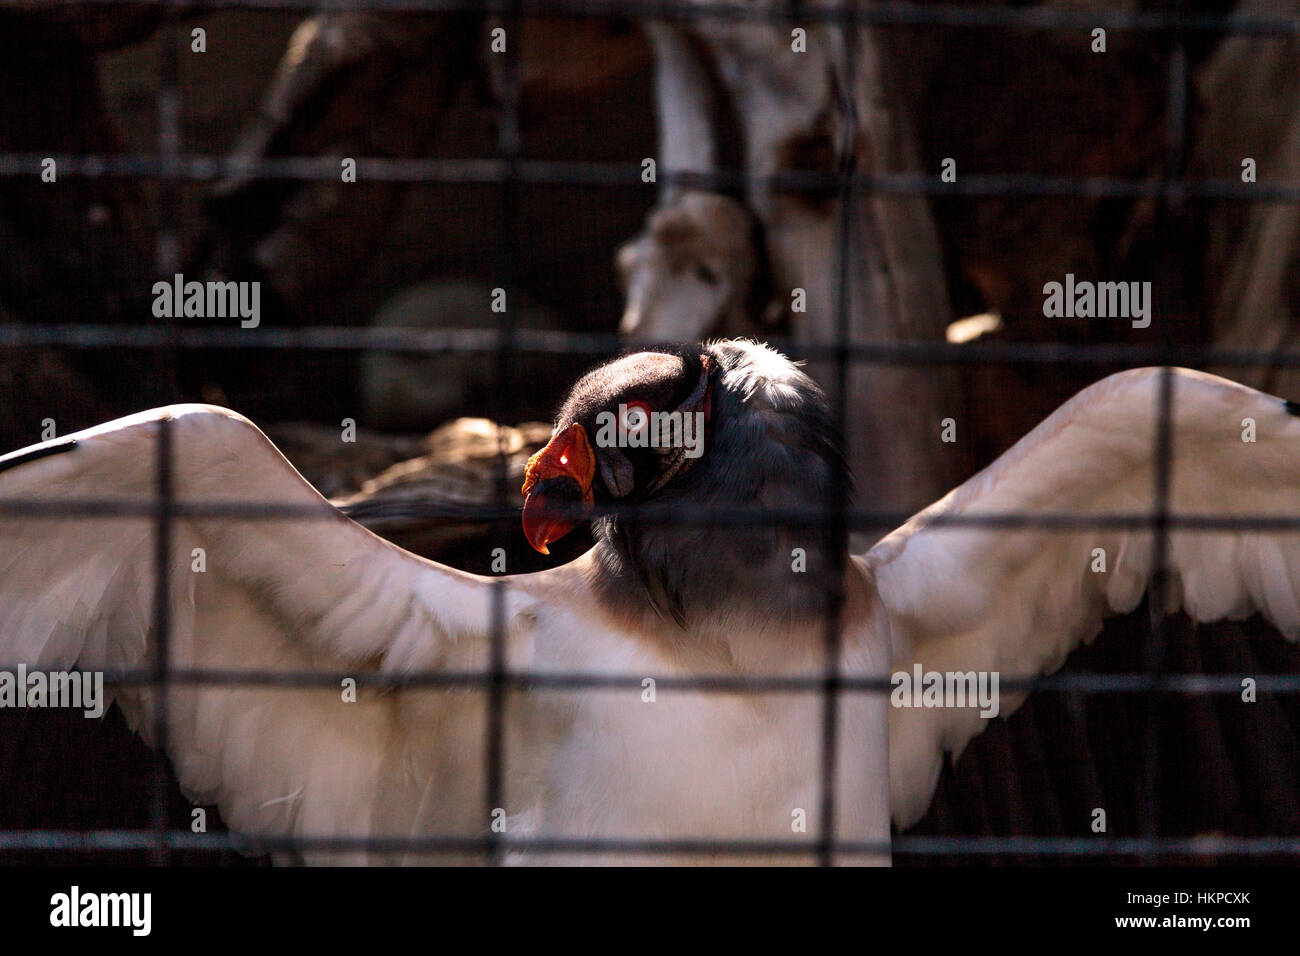 King vulture, Sarcoramphus papa, se trouve derrière les barreaux, écartant ses ailes. Banque D'Images